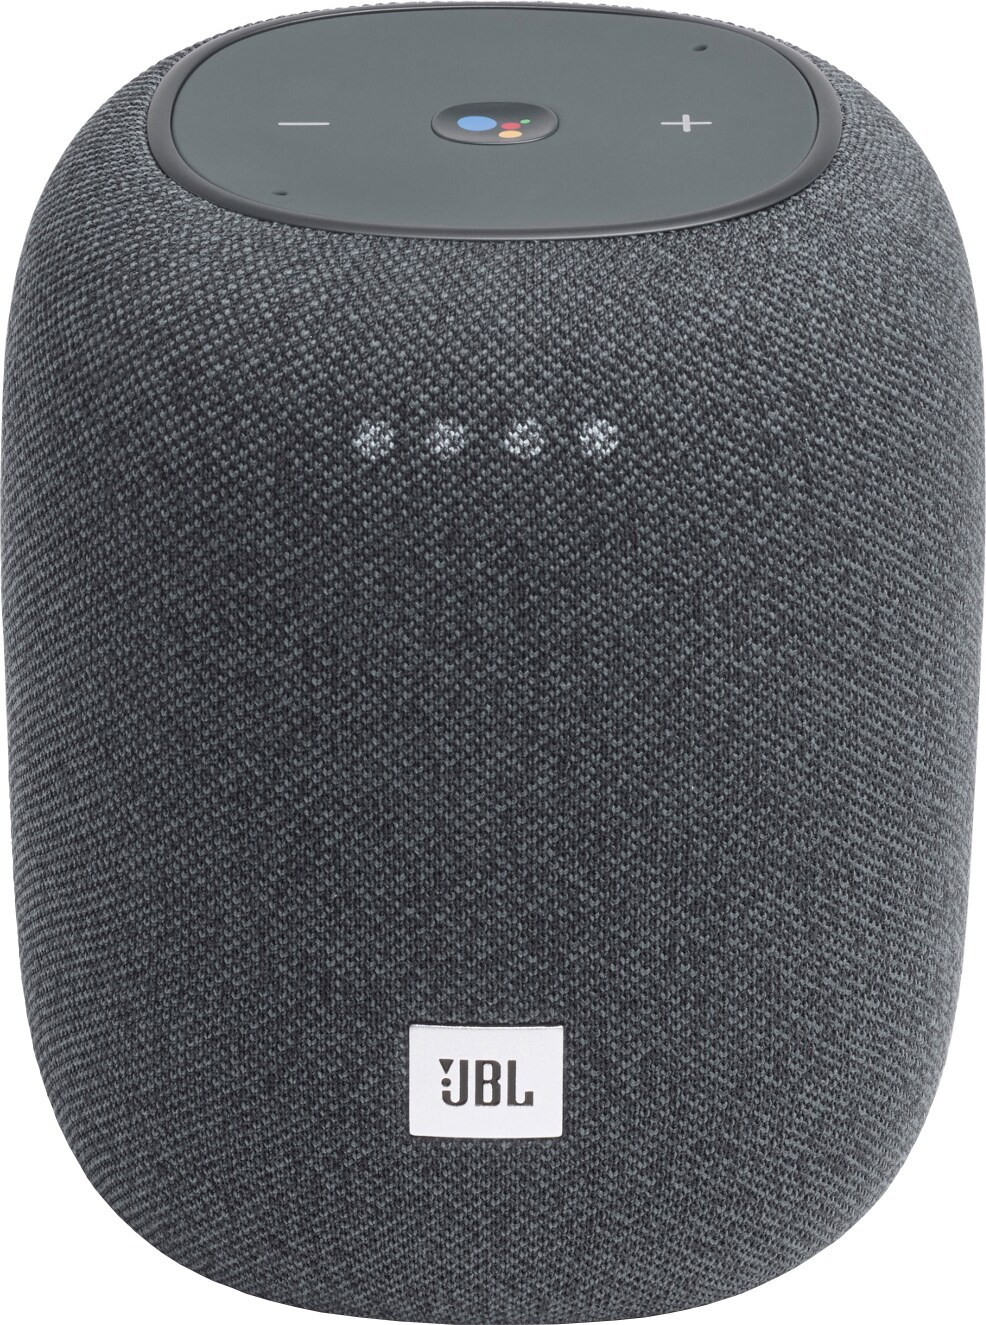 JBL Link Music trådløs højttaler (grå) - Multiroom højttalere - Elgiganten